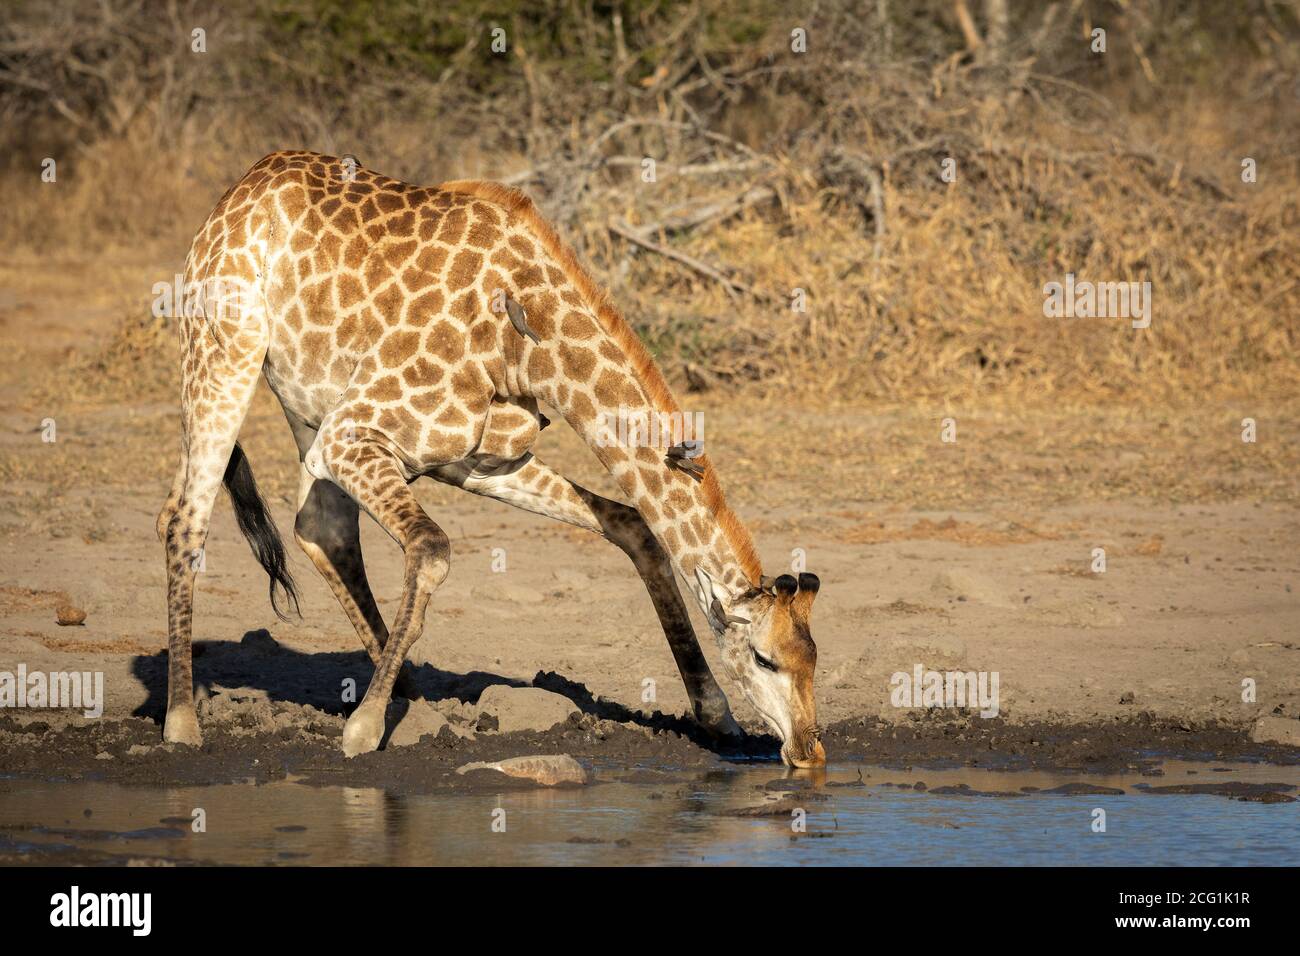 Girafe femelle se dégourbant et buvant dans le parc Kruger Afrique du Sud Banque D'Images